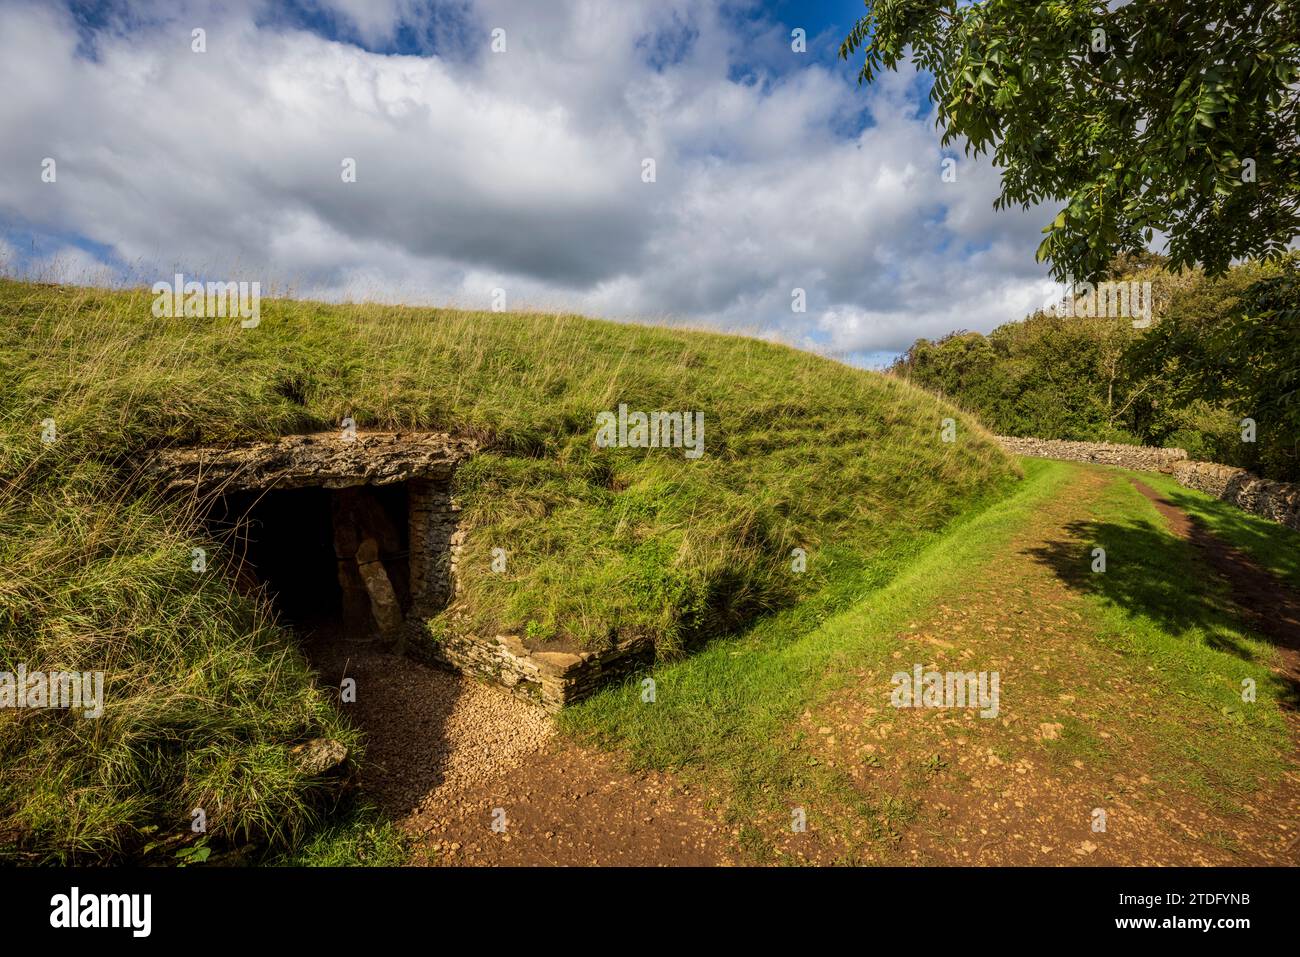 Belas Knap long Barrow néolithique sur Cleeve Hill dans les Cotswolds AONB, Gloucestershire Banque D'Images